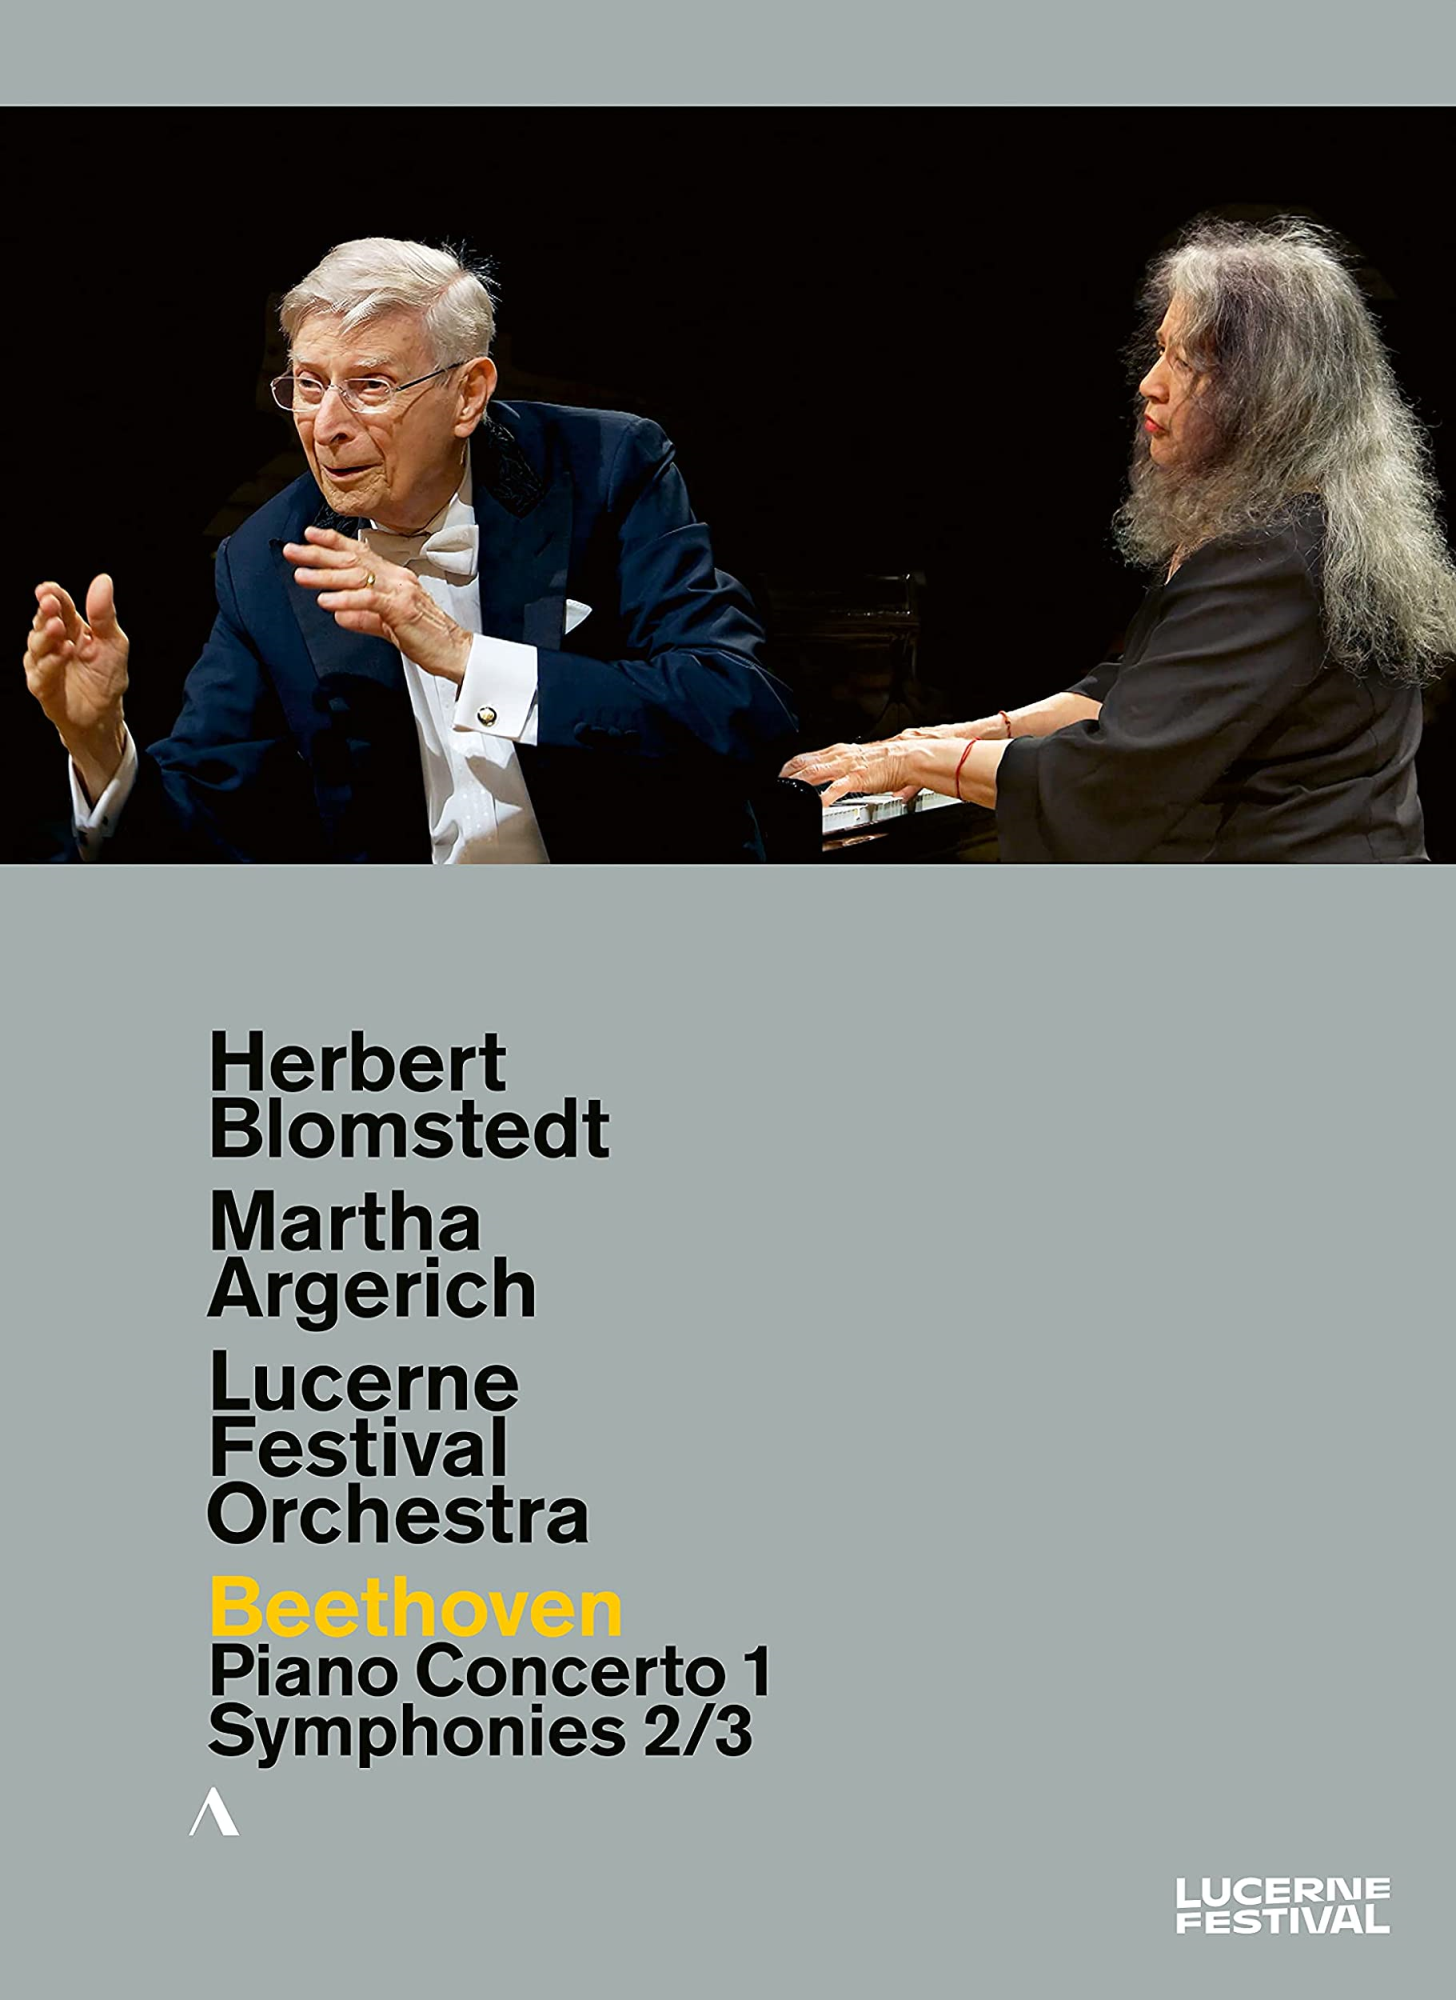 Music Dvd Ludwig Van Beethoven - Piano Concerto No.1, Symphonies Nos.2 & 3 NUOVO SIGILLATO, EDIZIONE DEL 10/09/2021 SUBITO DISPONIBILE